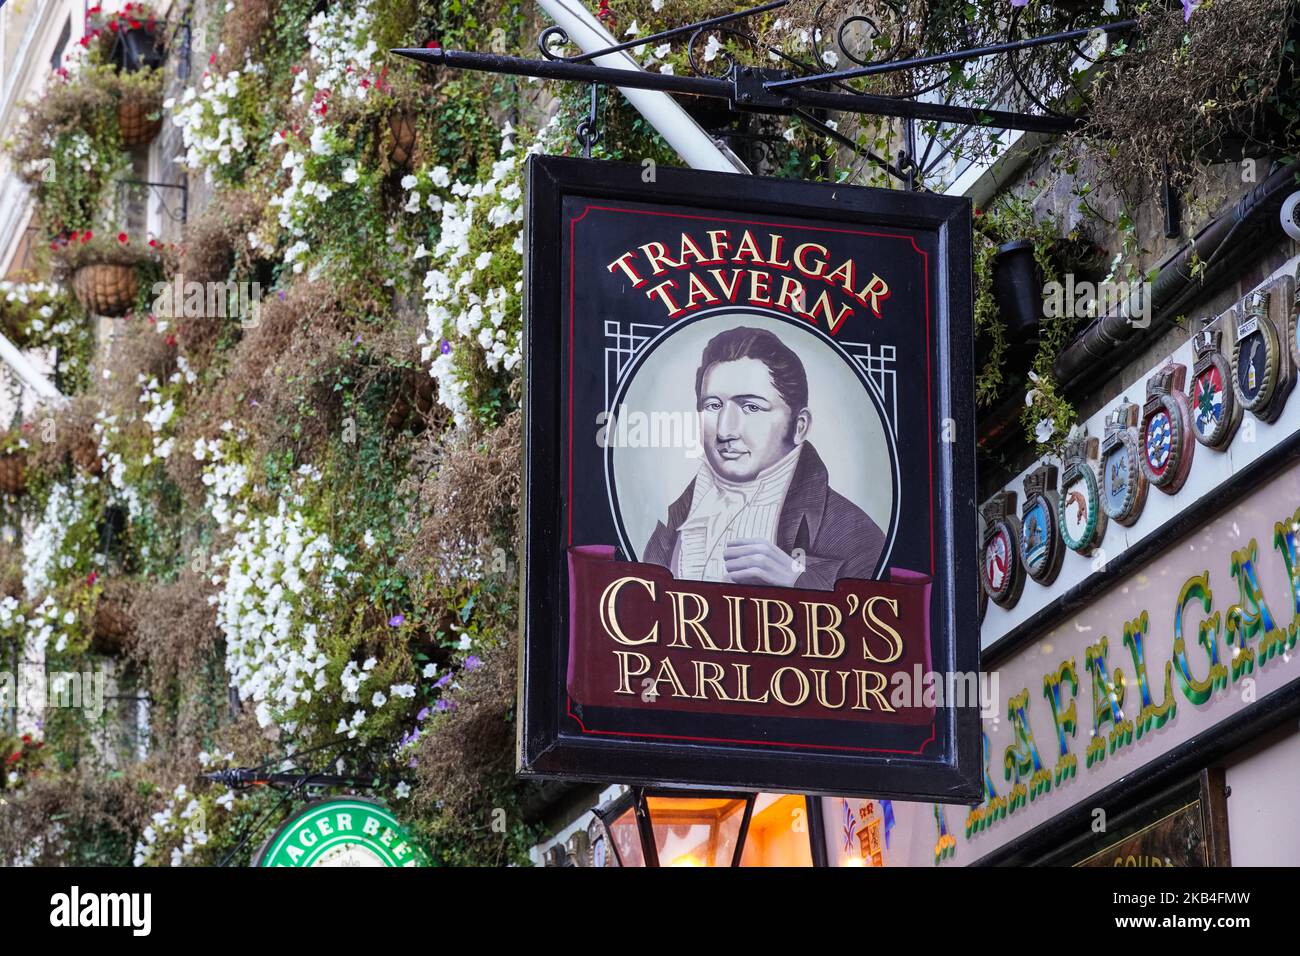 Cribb's Parlor au Trafalgar Tavern pub et restaurant à Greenwich, Londres Angleterre Royaume-Uni Banque D'Images